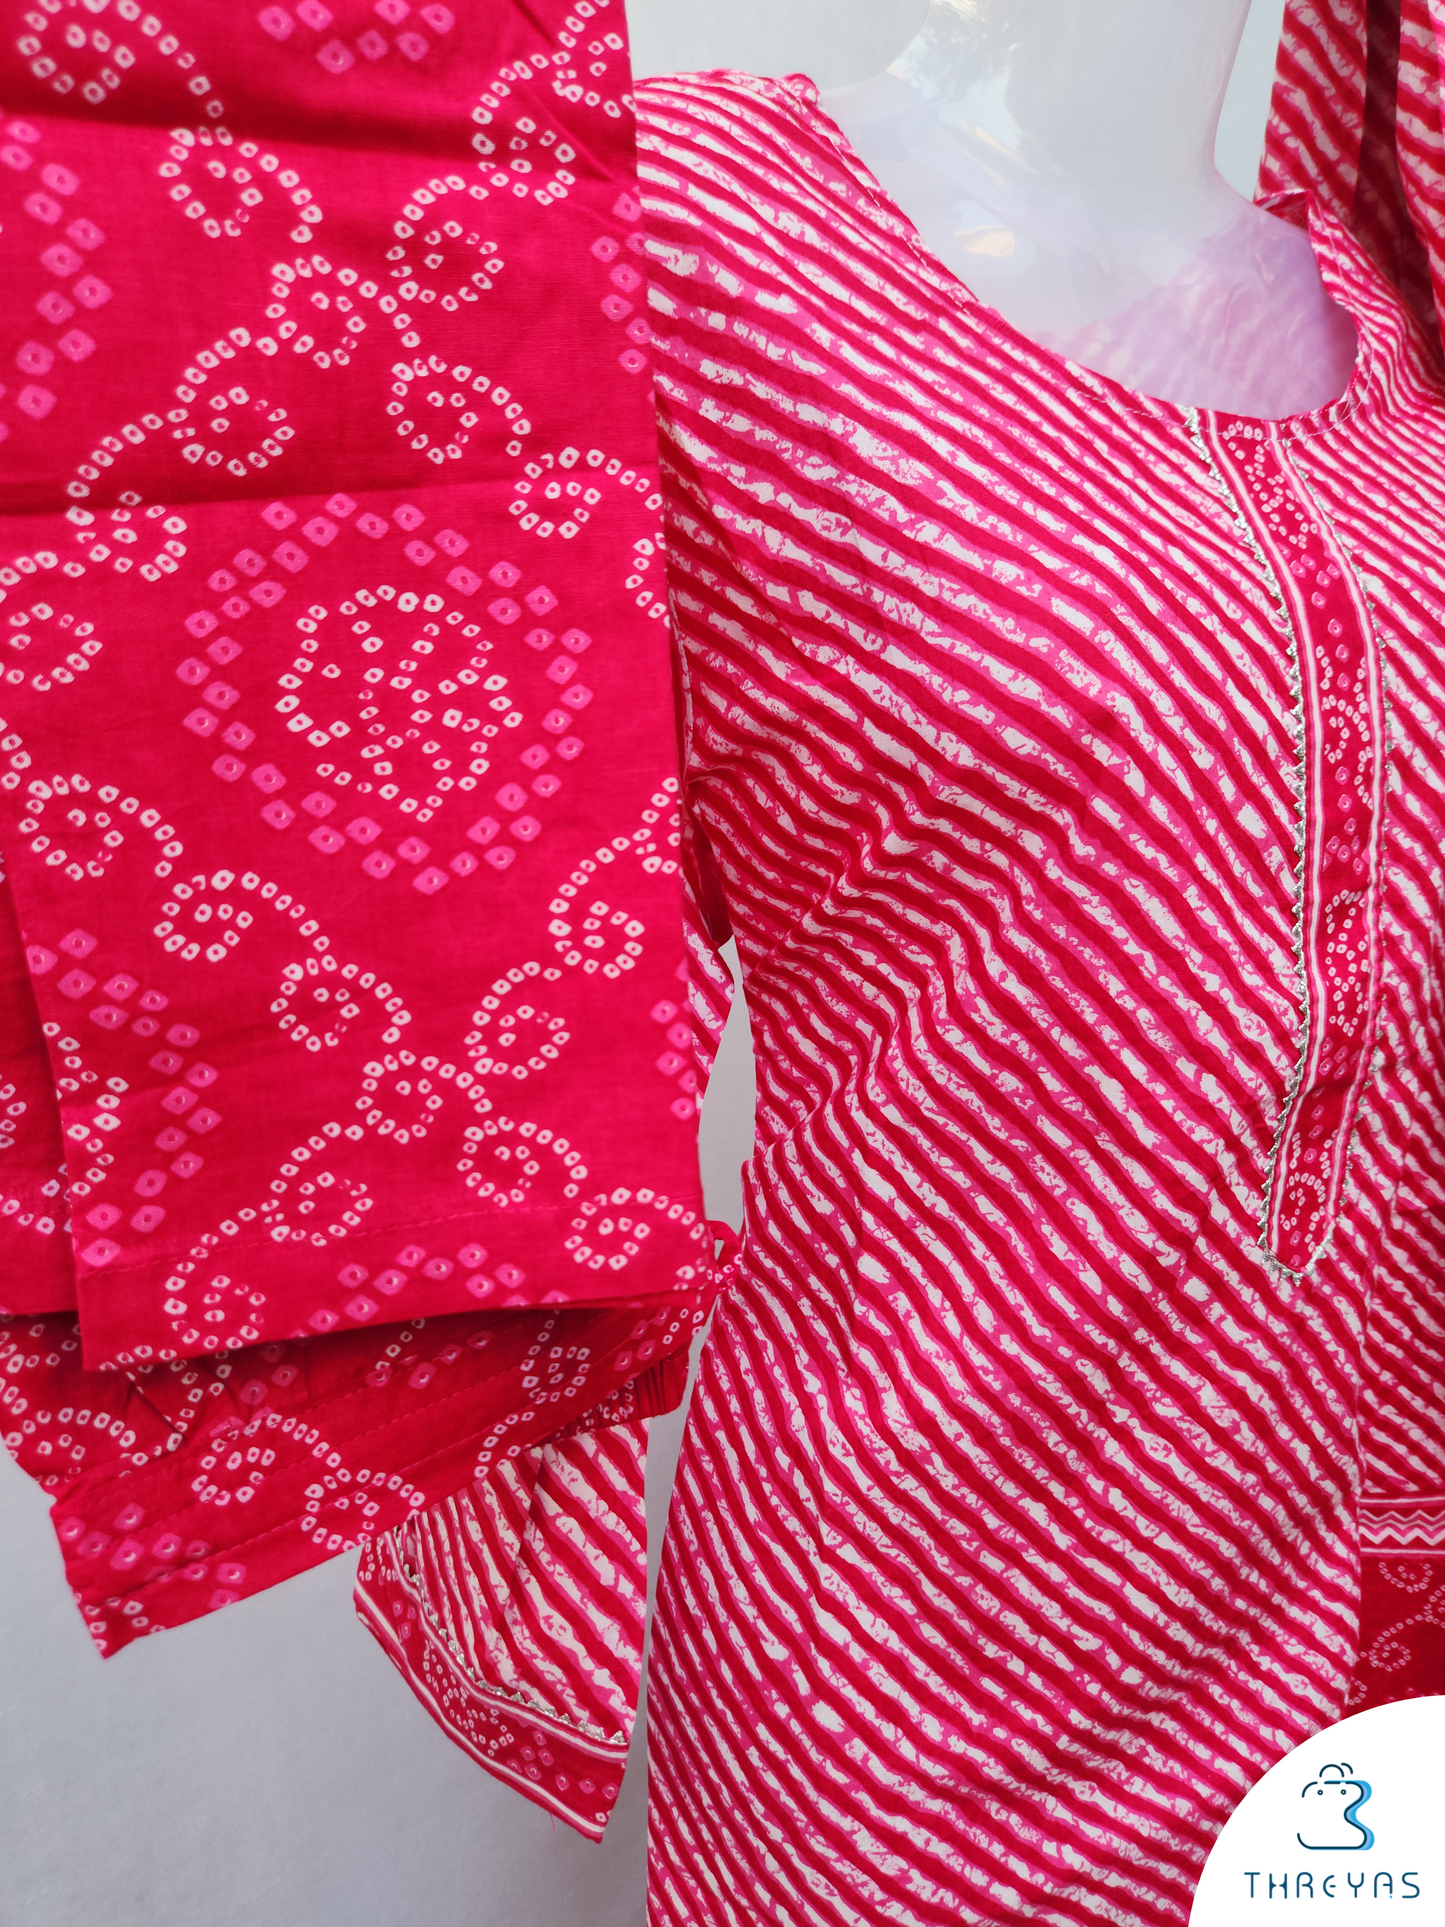 Pink Cotton kurthis Set for women  | Stylish Kurthis & Kurtis Sets for Women |  Threyas 